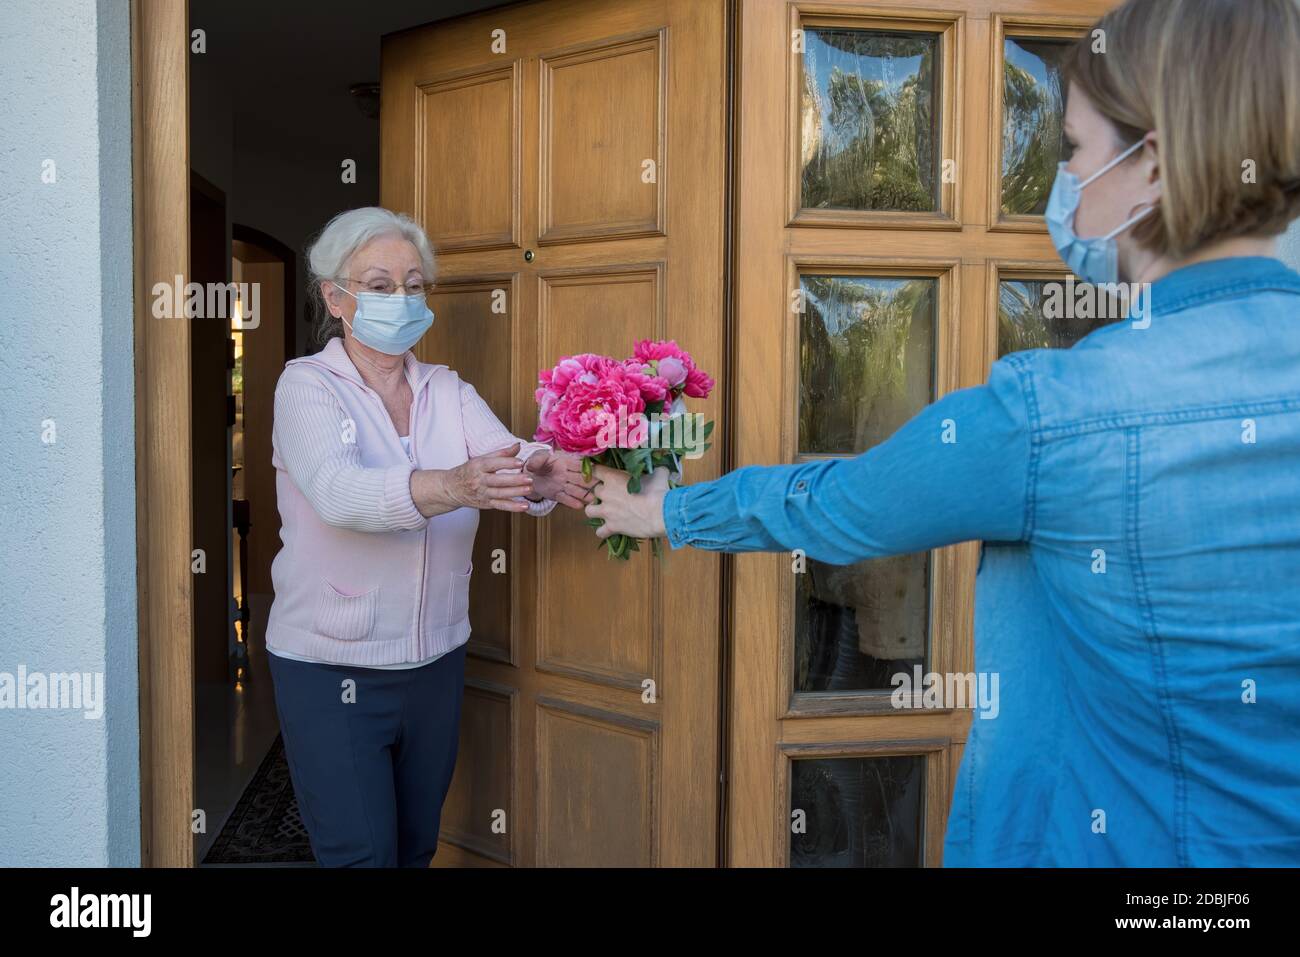 La mujer mayor con máscara facial recibe flores en la puerta de la casa de la mujer vecina Foto de stock